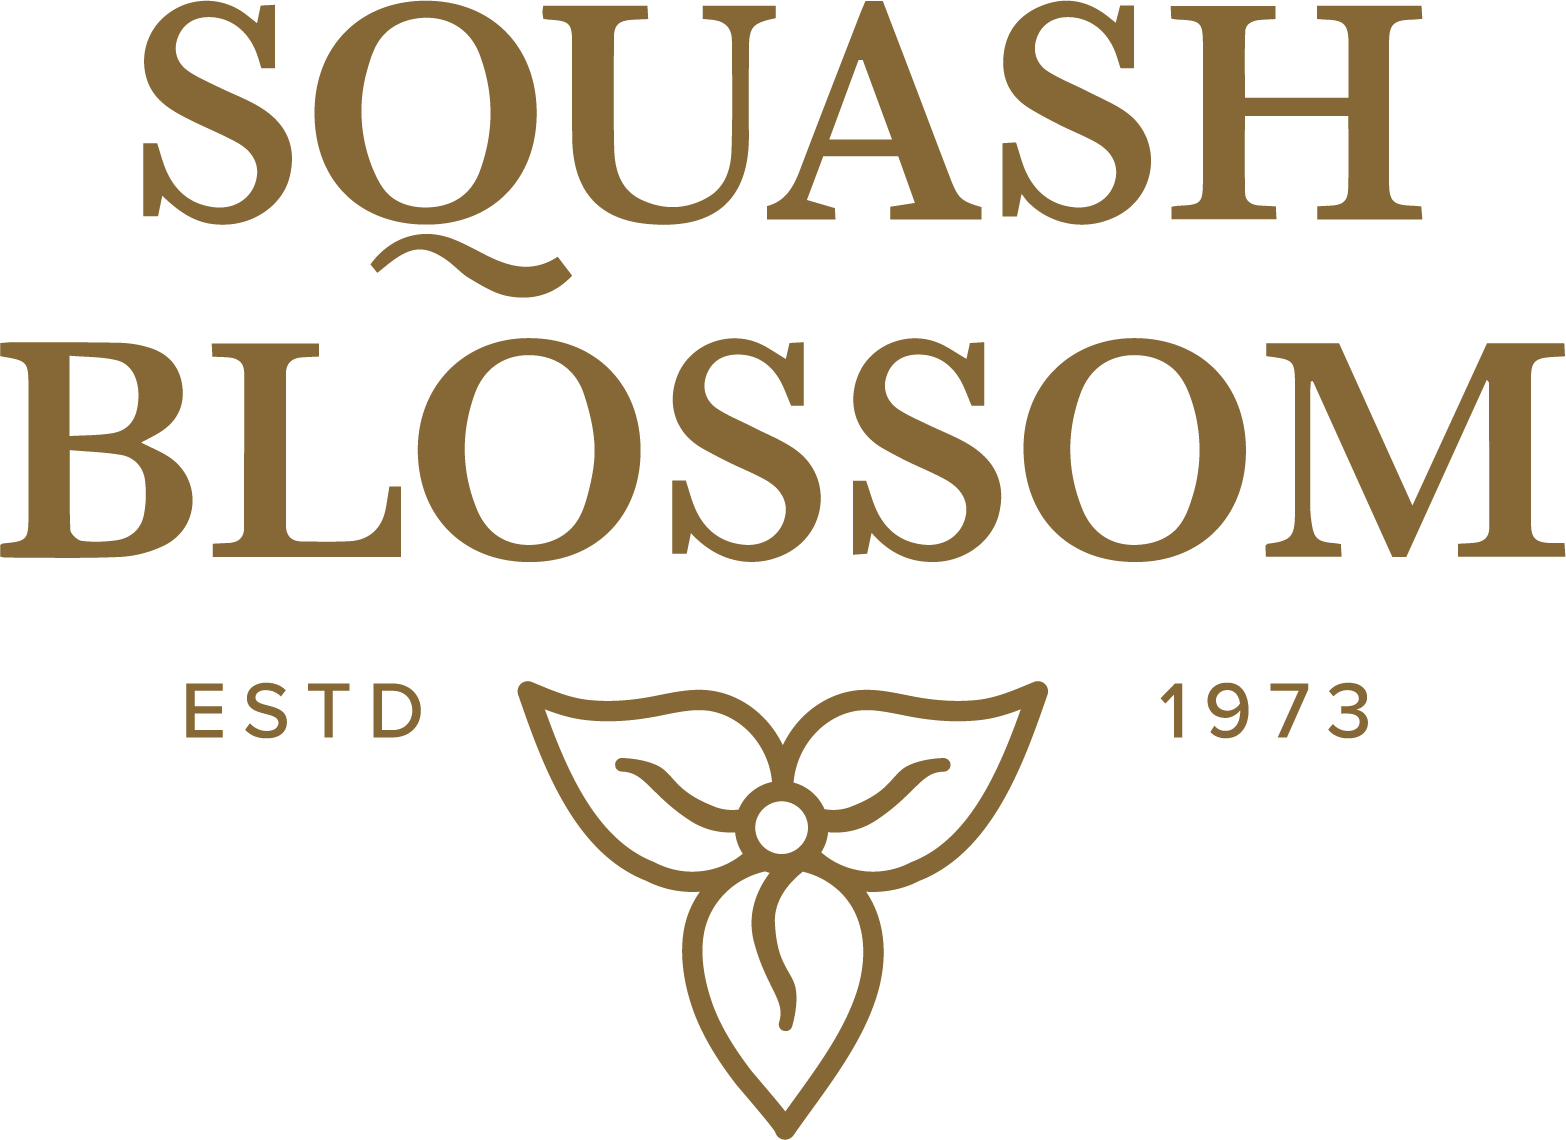 (c) Squashblossom.com